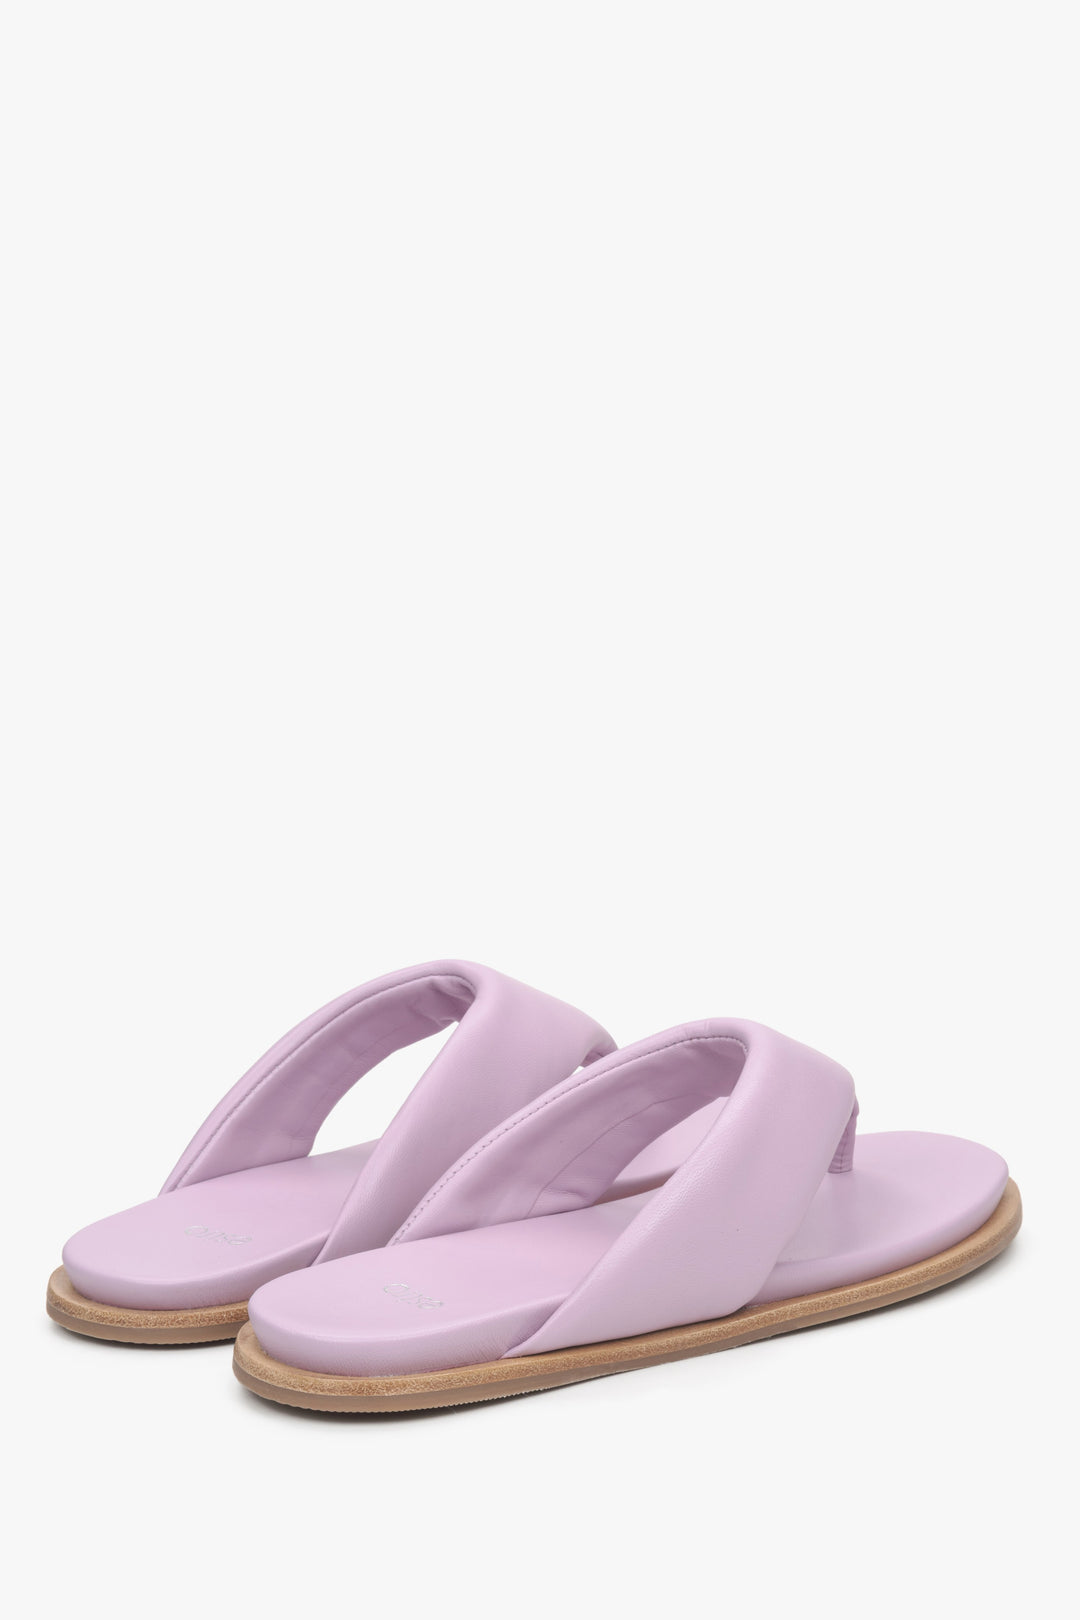 Women's lilac leather slide sandals Estro.